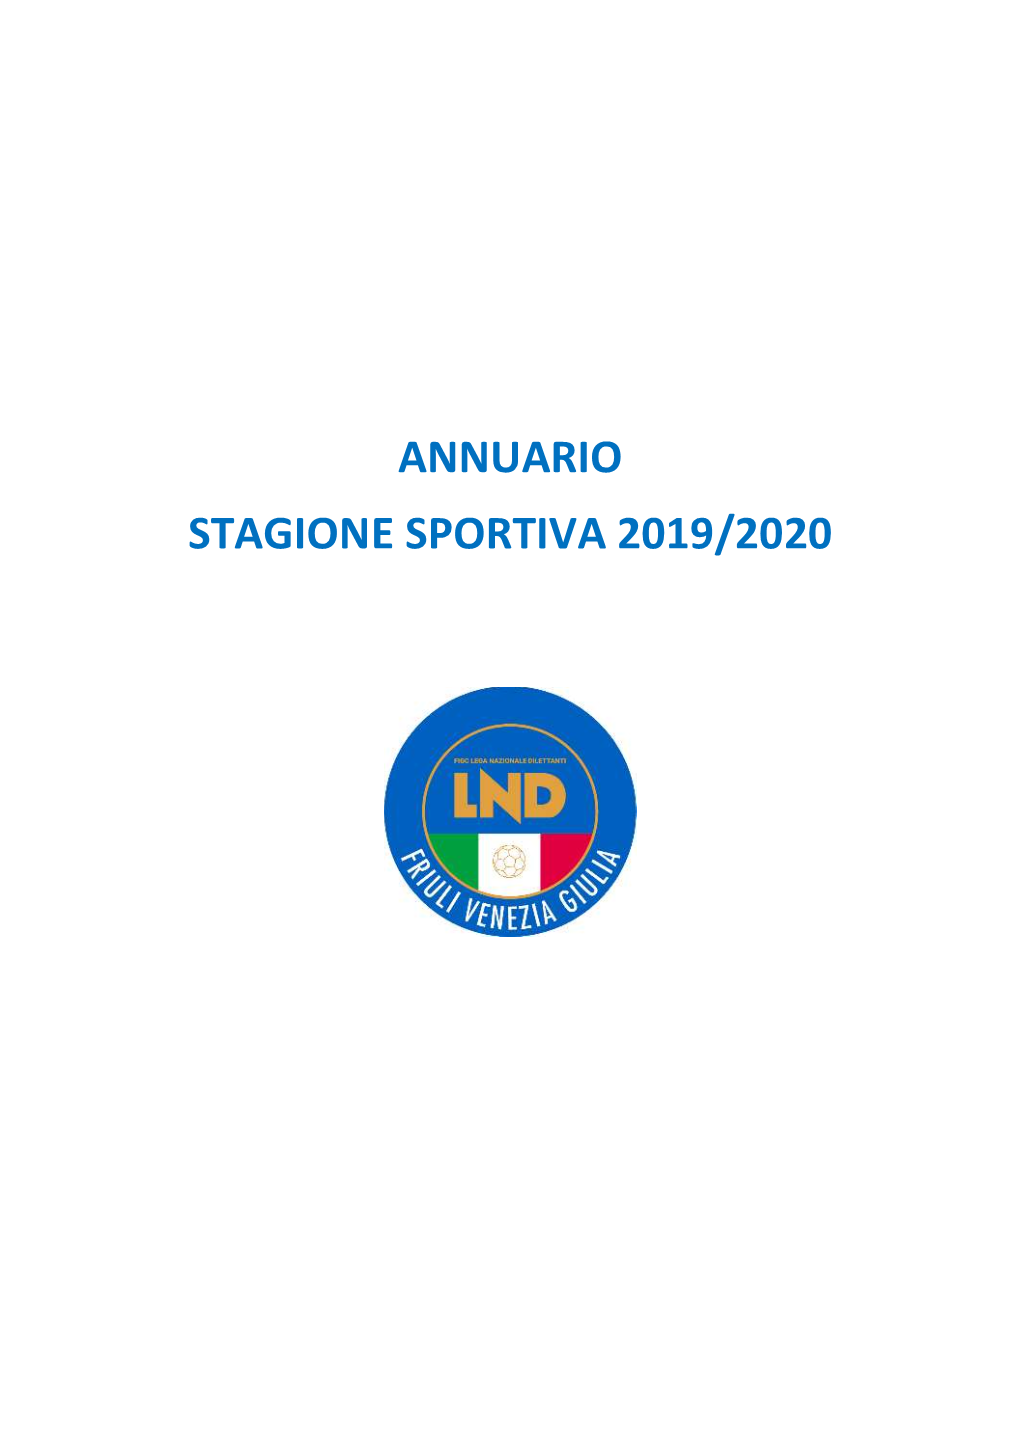 Annuario Stagione Sportiva 2019/2020